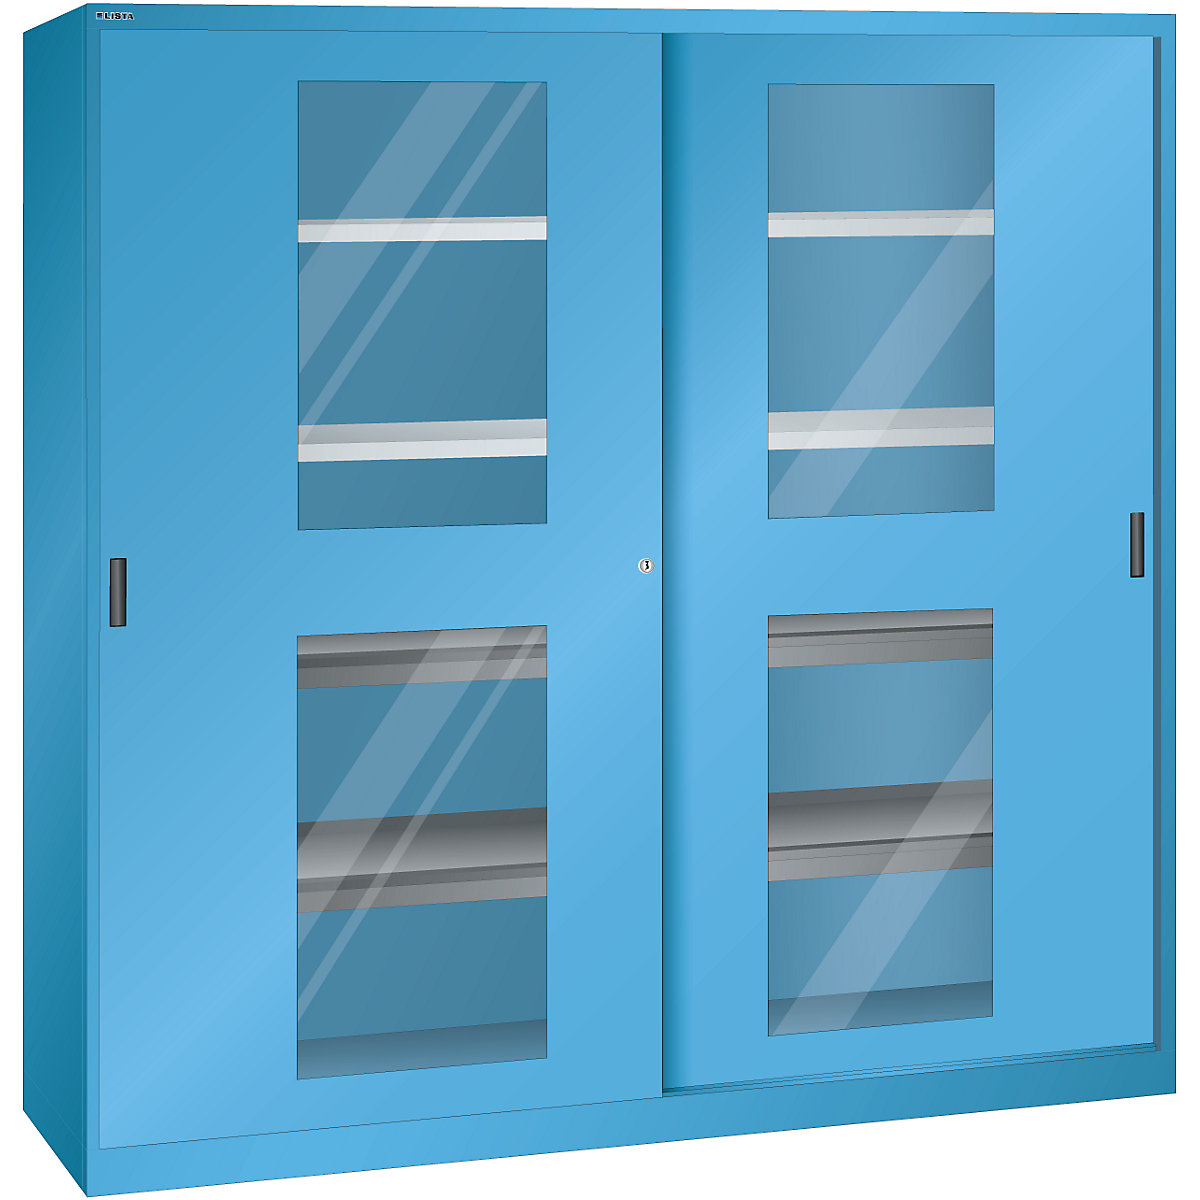 Sliding door cupboard with vision panel doors – LISTA